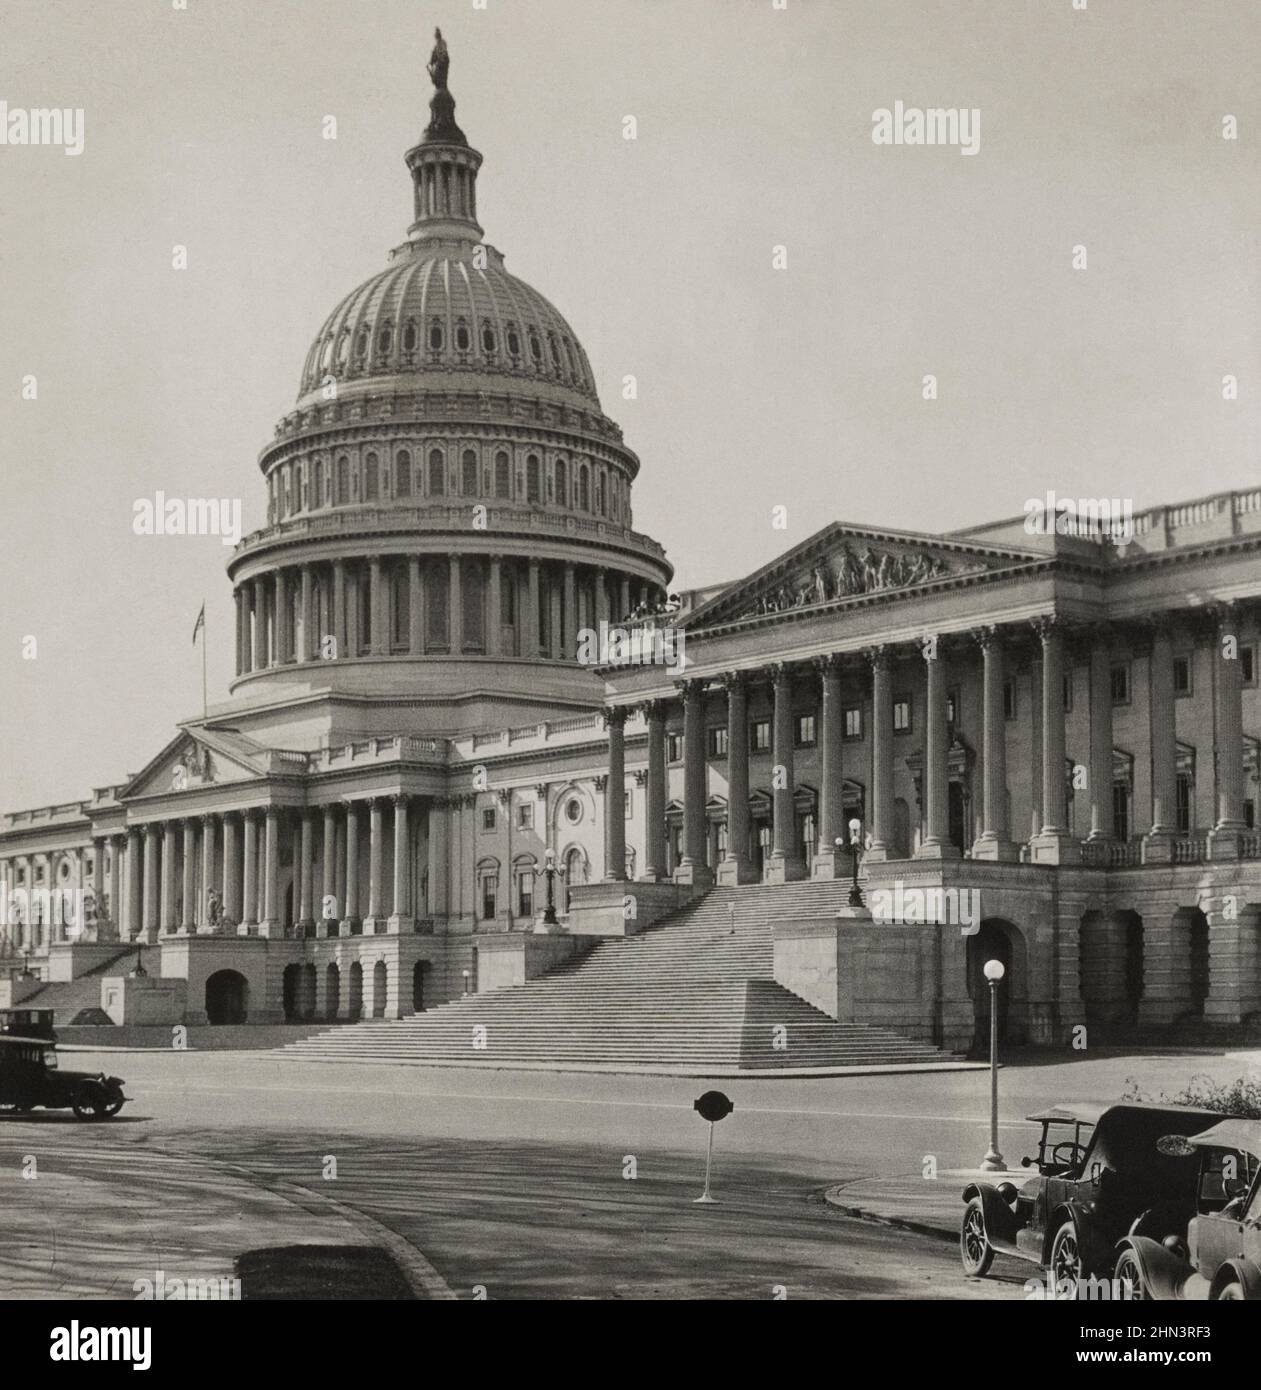 Foto vintage del Capitolio de los Estados Unidos, (frente este), Washington, D.C., EE.UU. 1926 Foto de stock